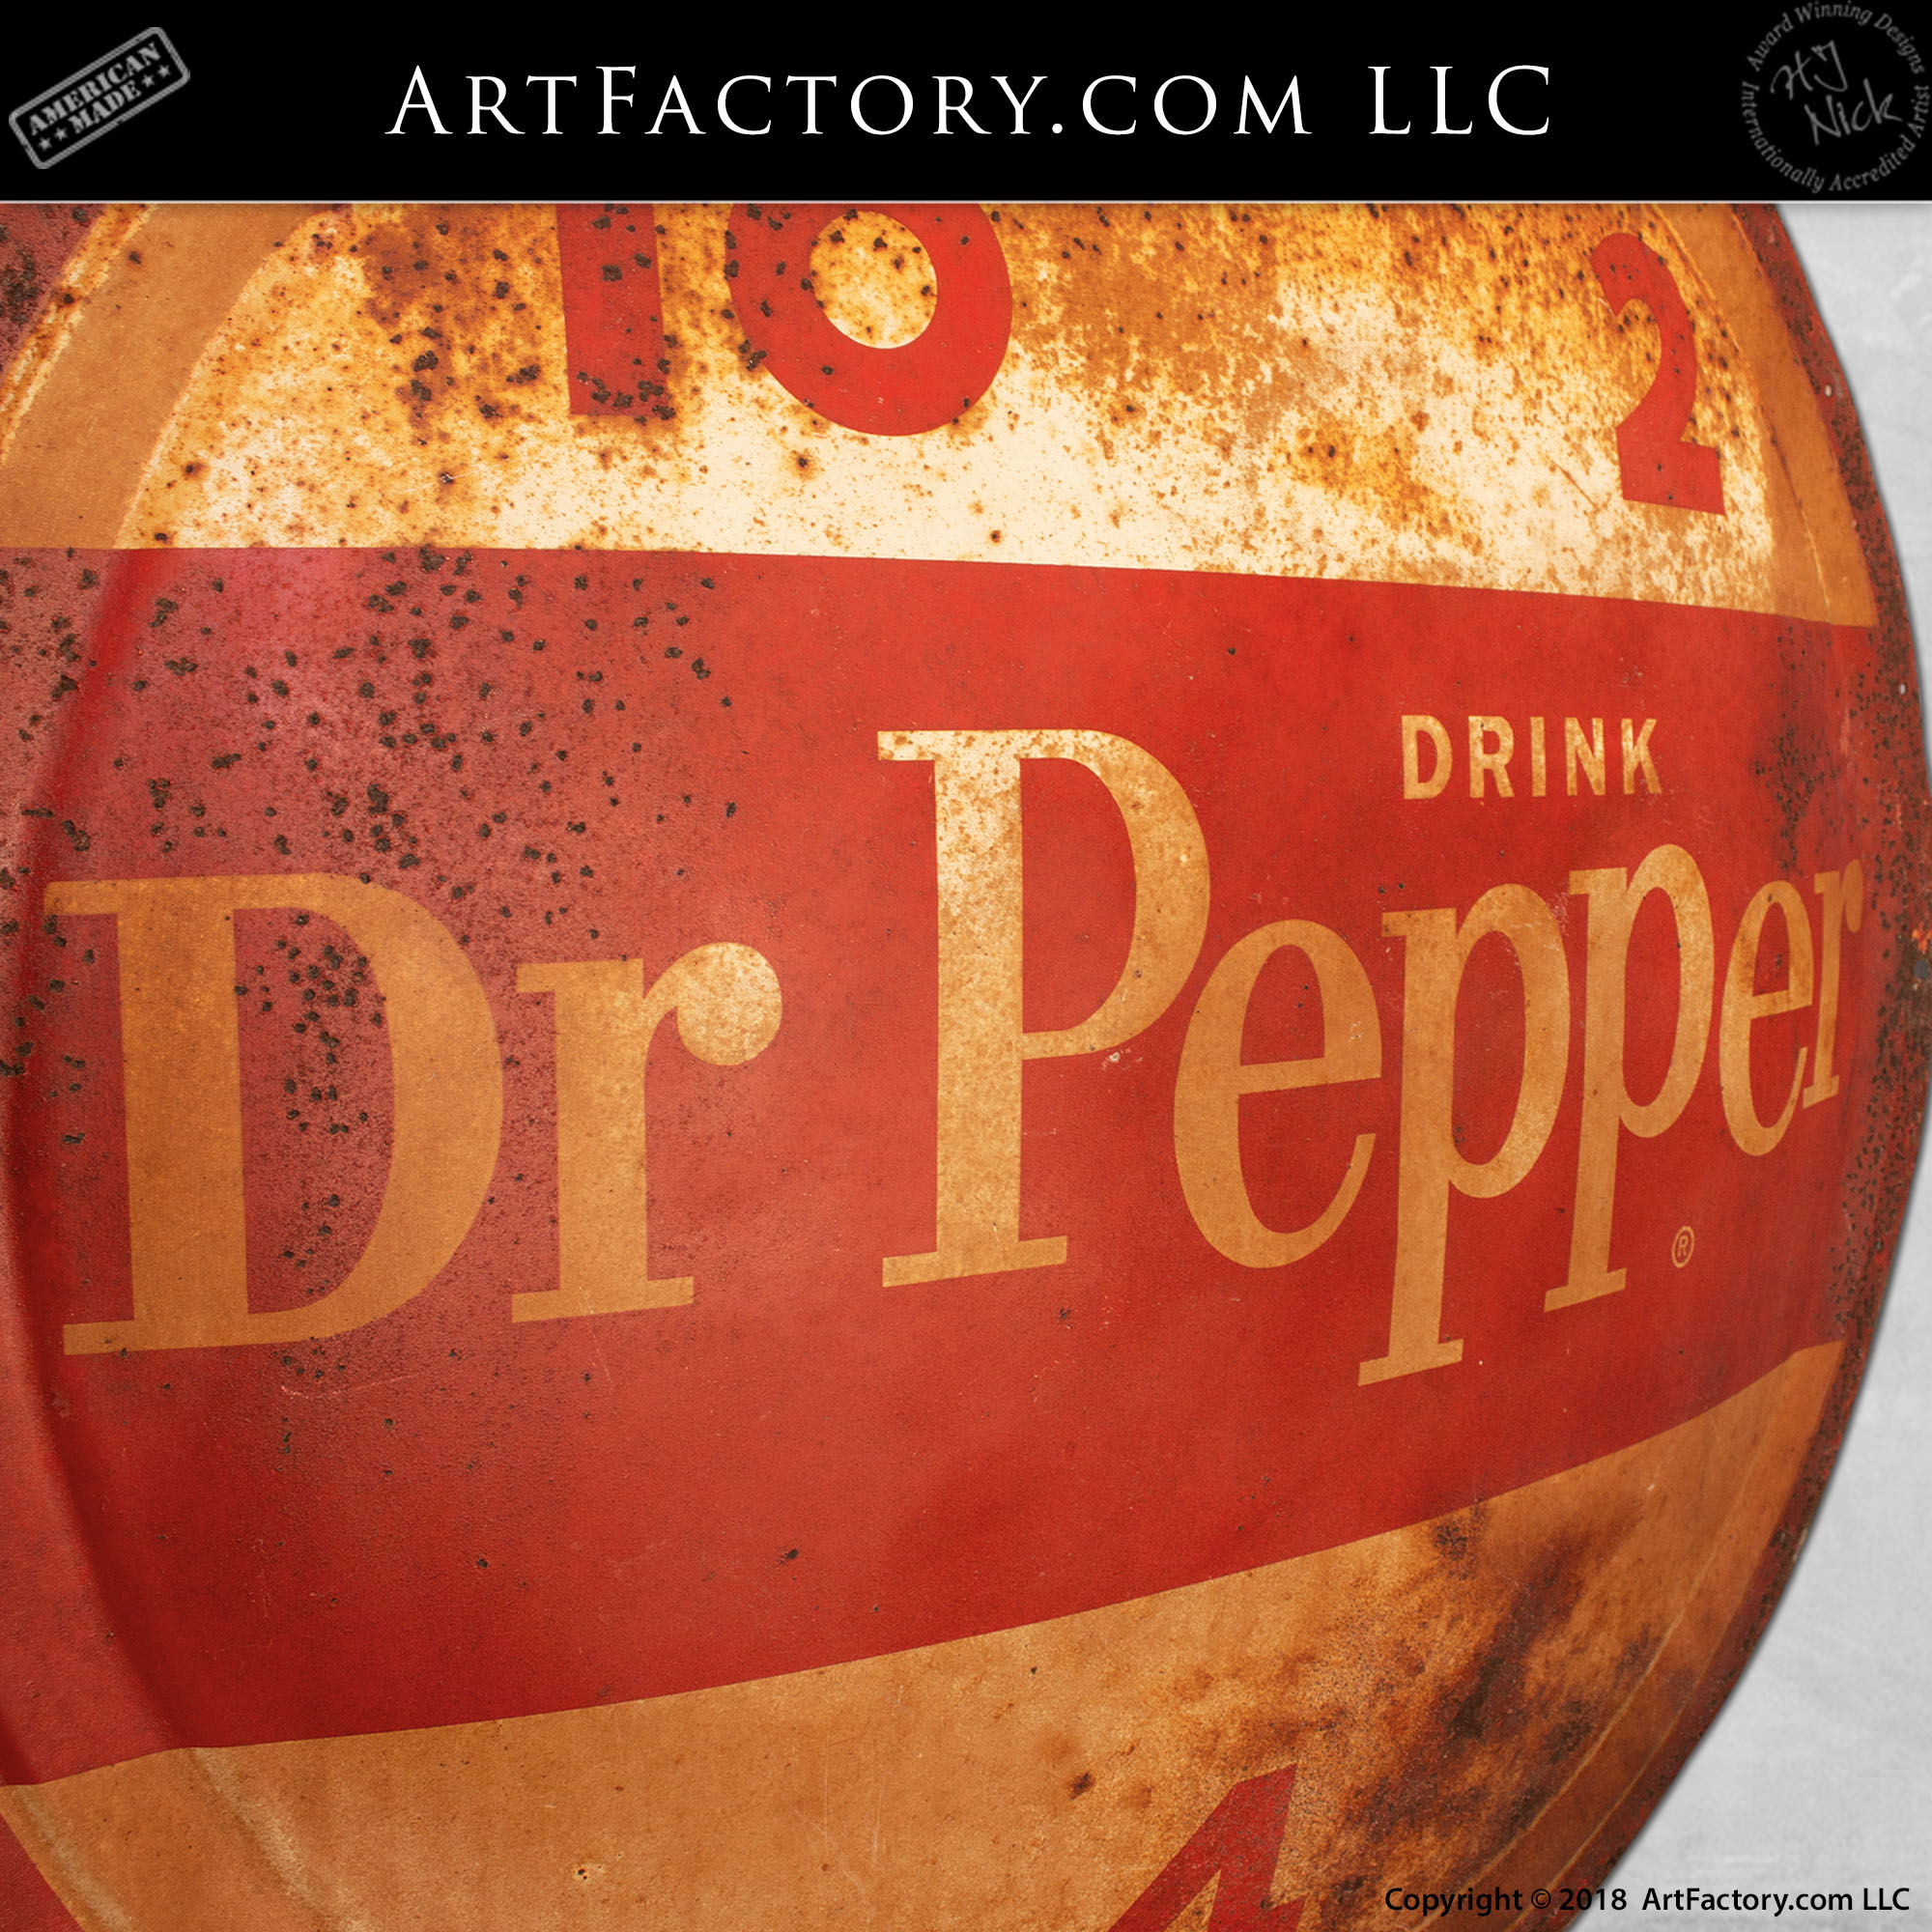 Vintage Dr Pepper Soda Porcelain Sign